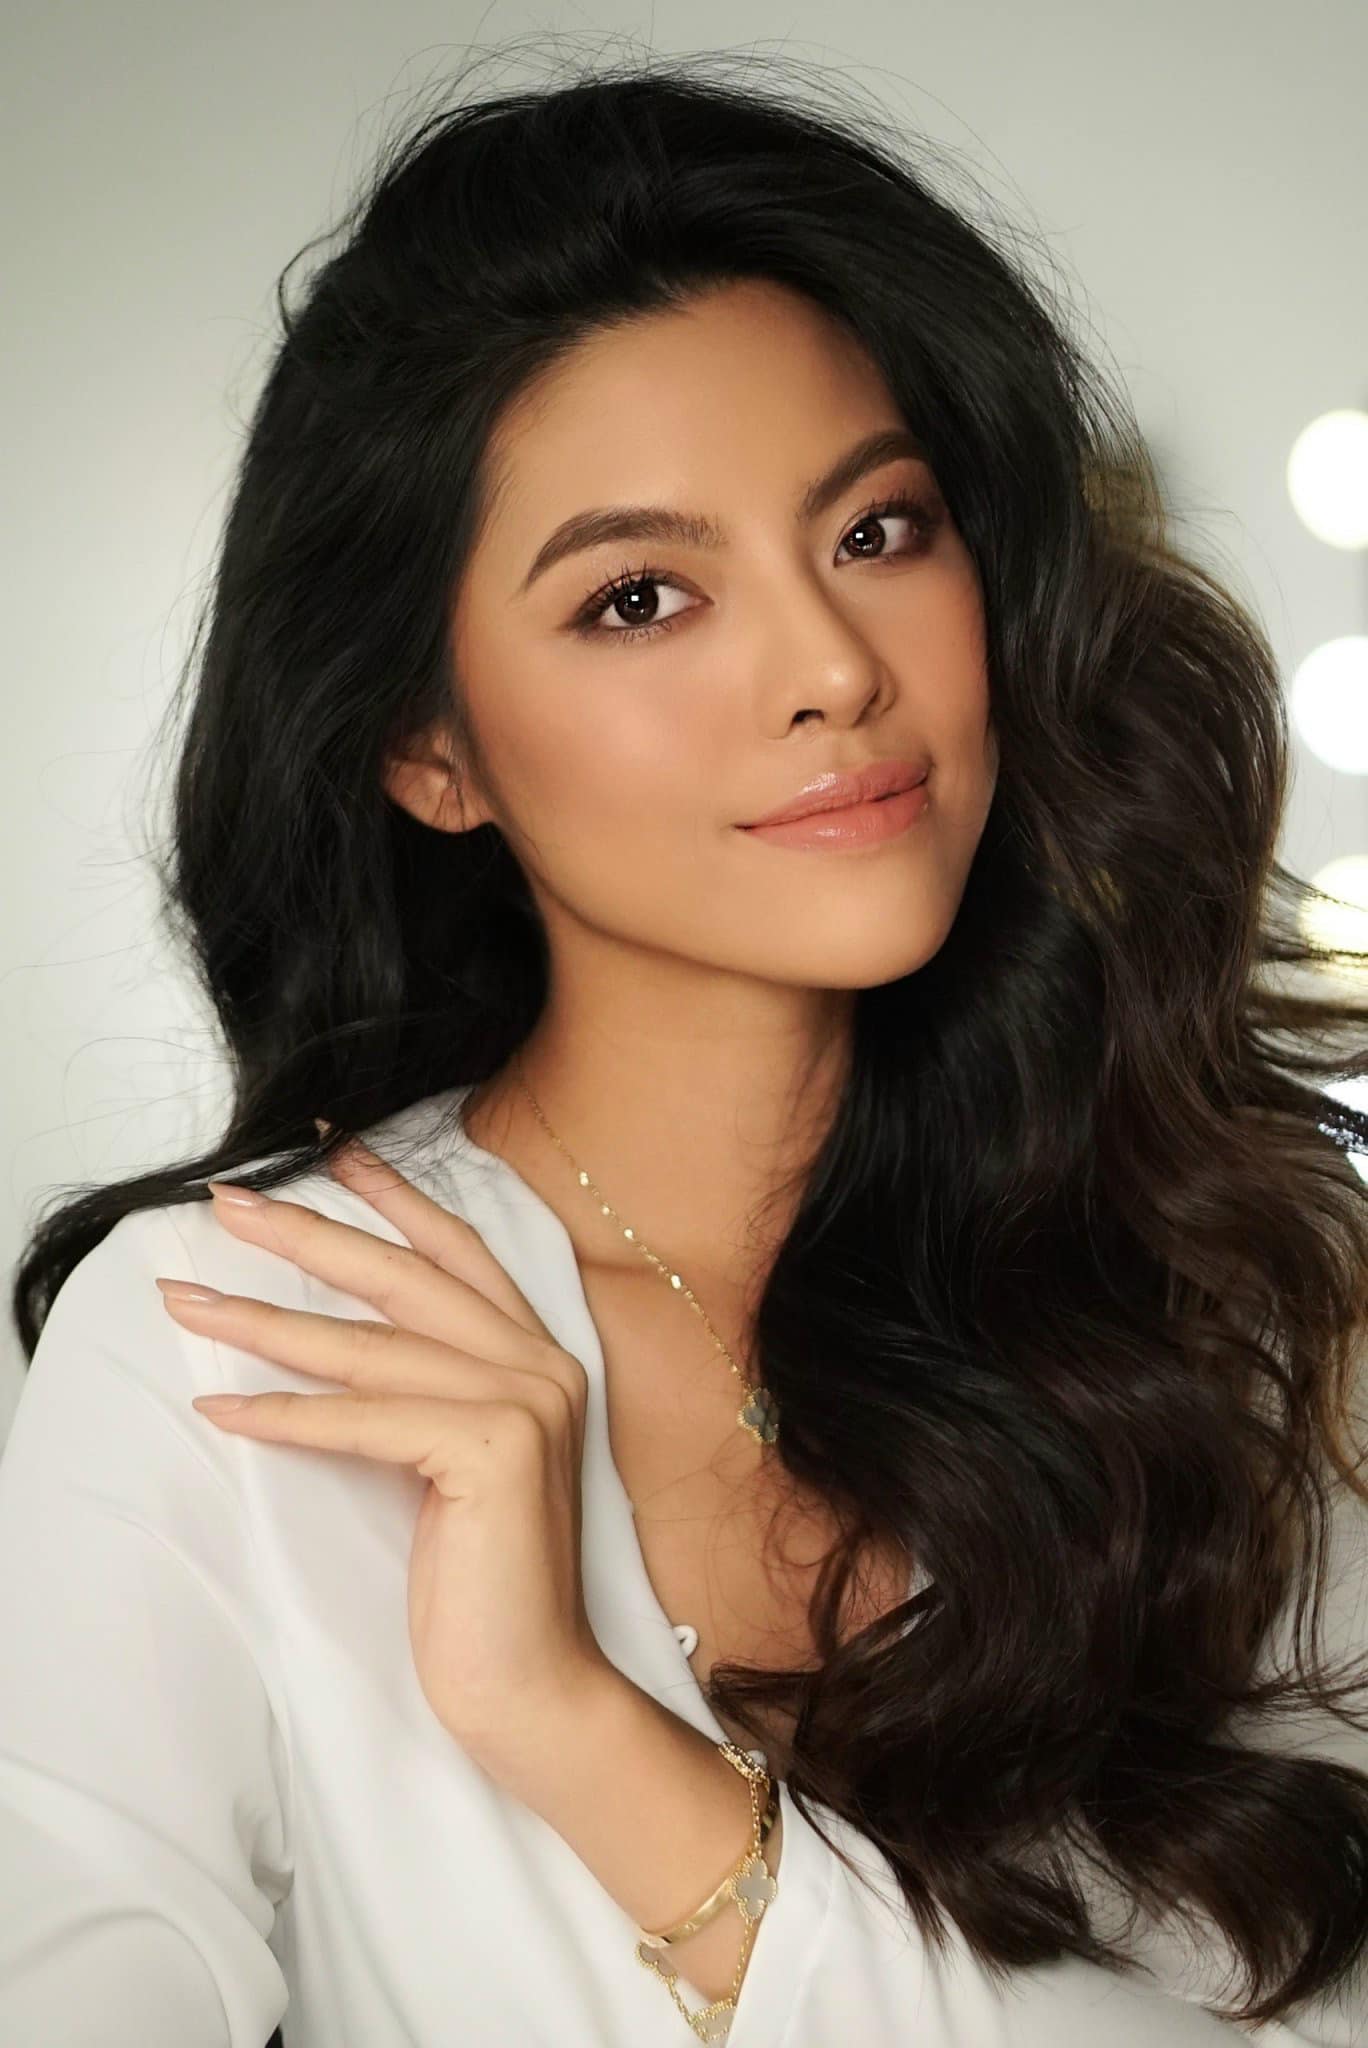 Á hậu 1 Hoa hậu Thể thao Việt Nam giải thích về biểu cảm còn 